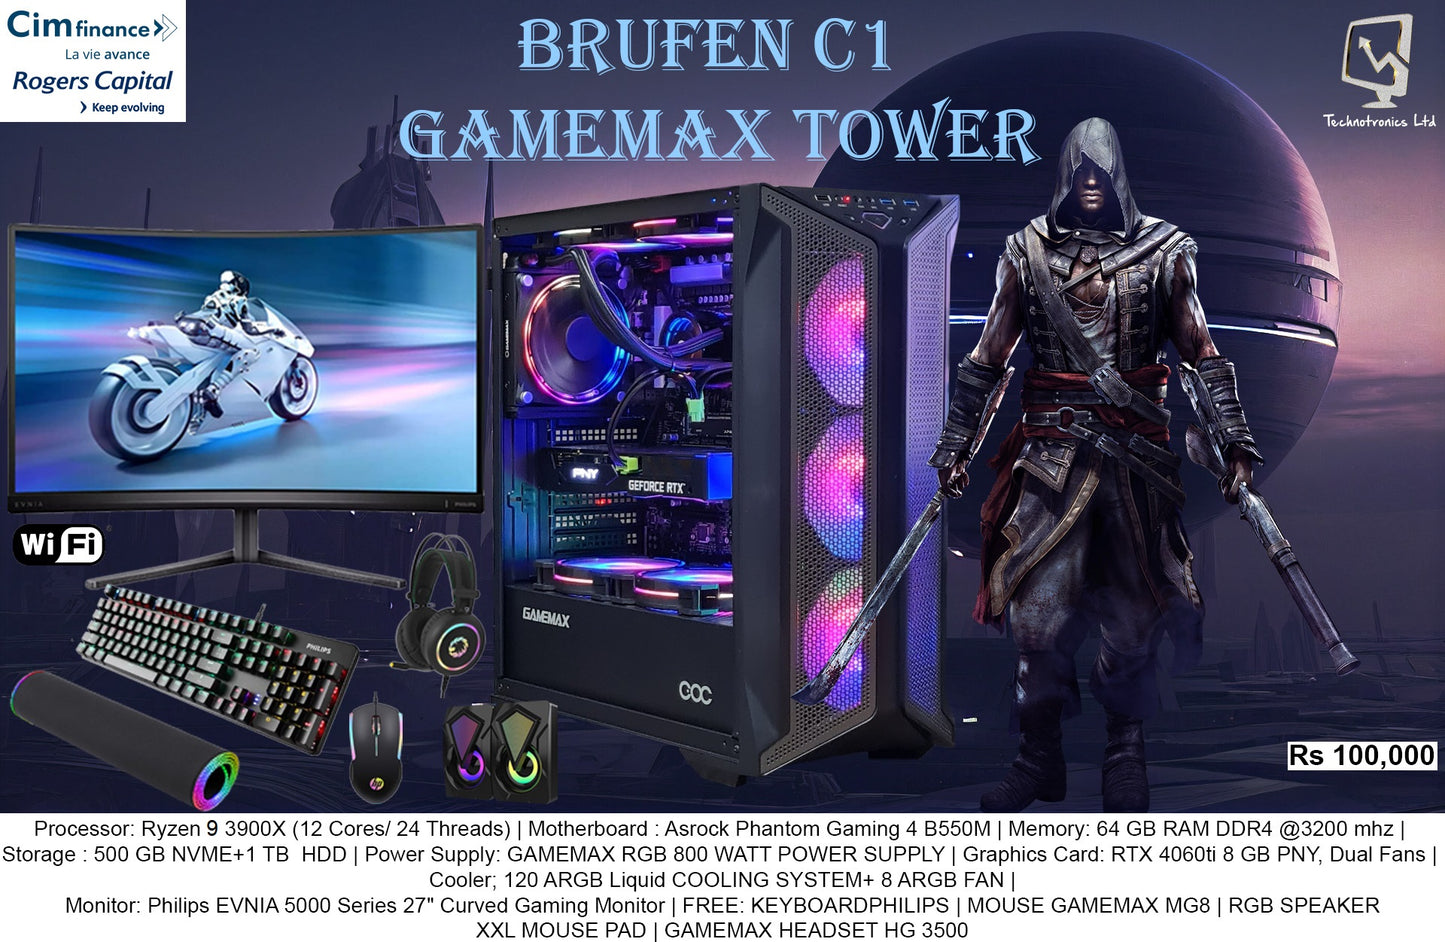 Brufen C1 GAMEMAX SET, Ryzen 9 3900X, 64 GB RAM DDR4 @3200 mhz,L 500 GB NVME+1 TB HDD, RTX 4060ti 8 GB PNY